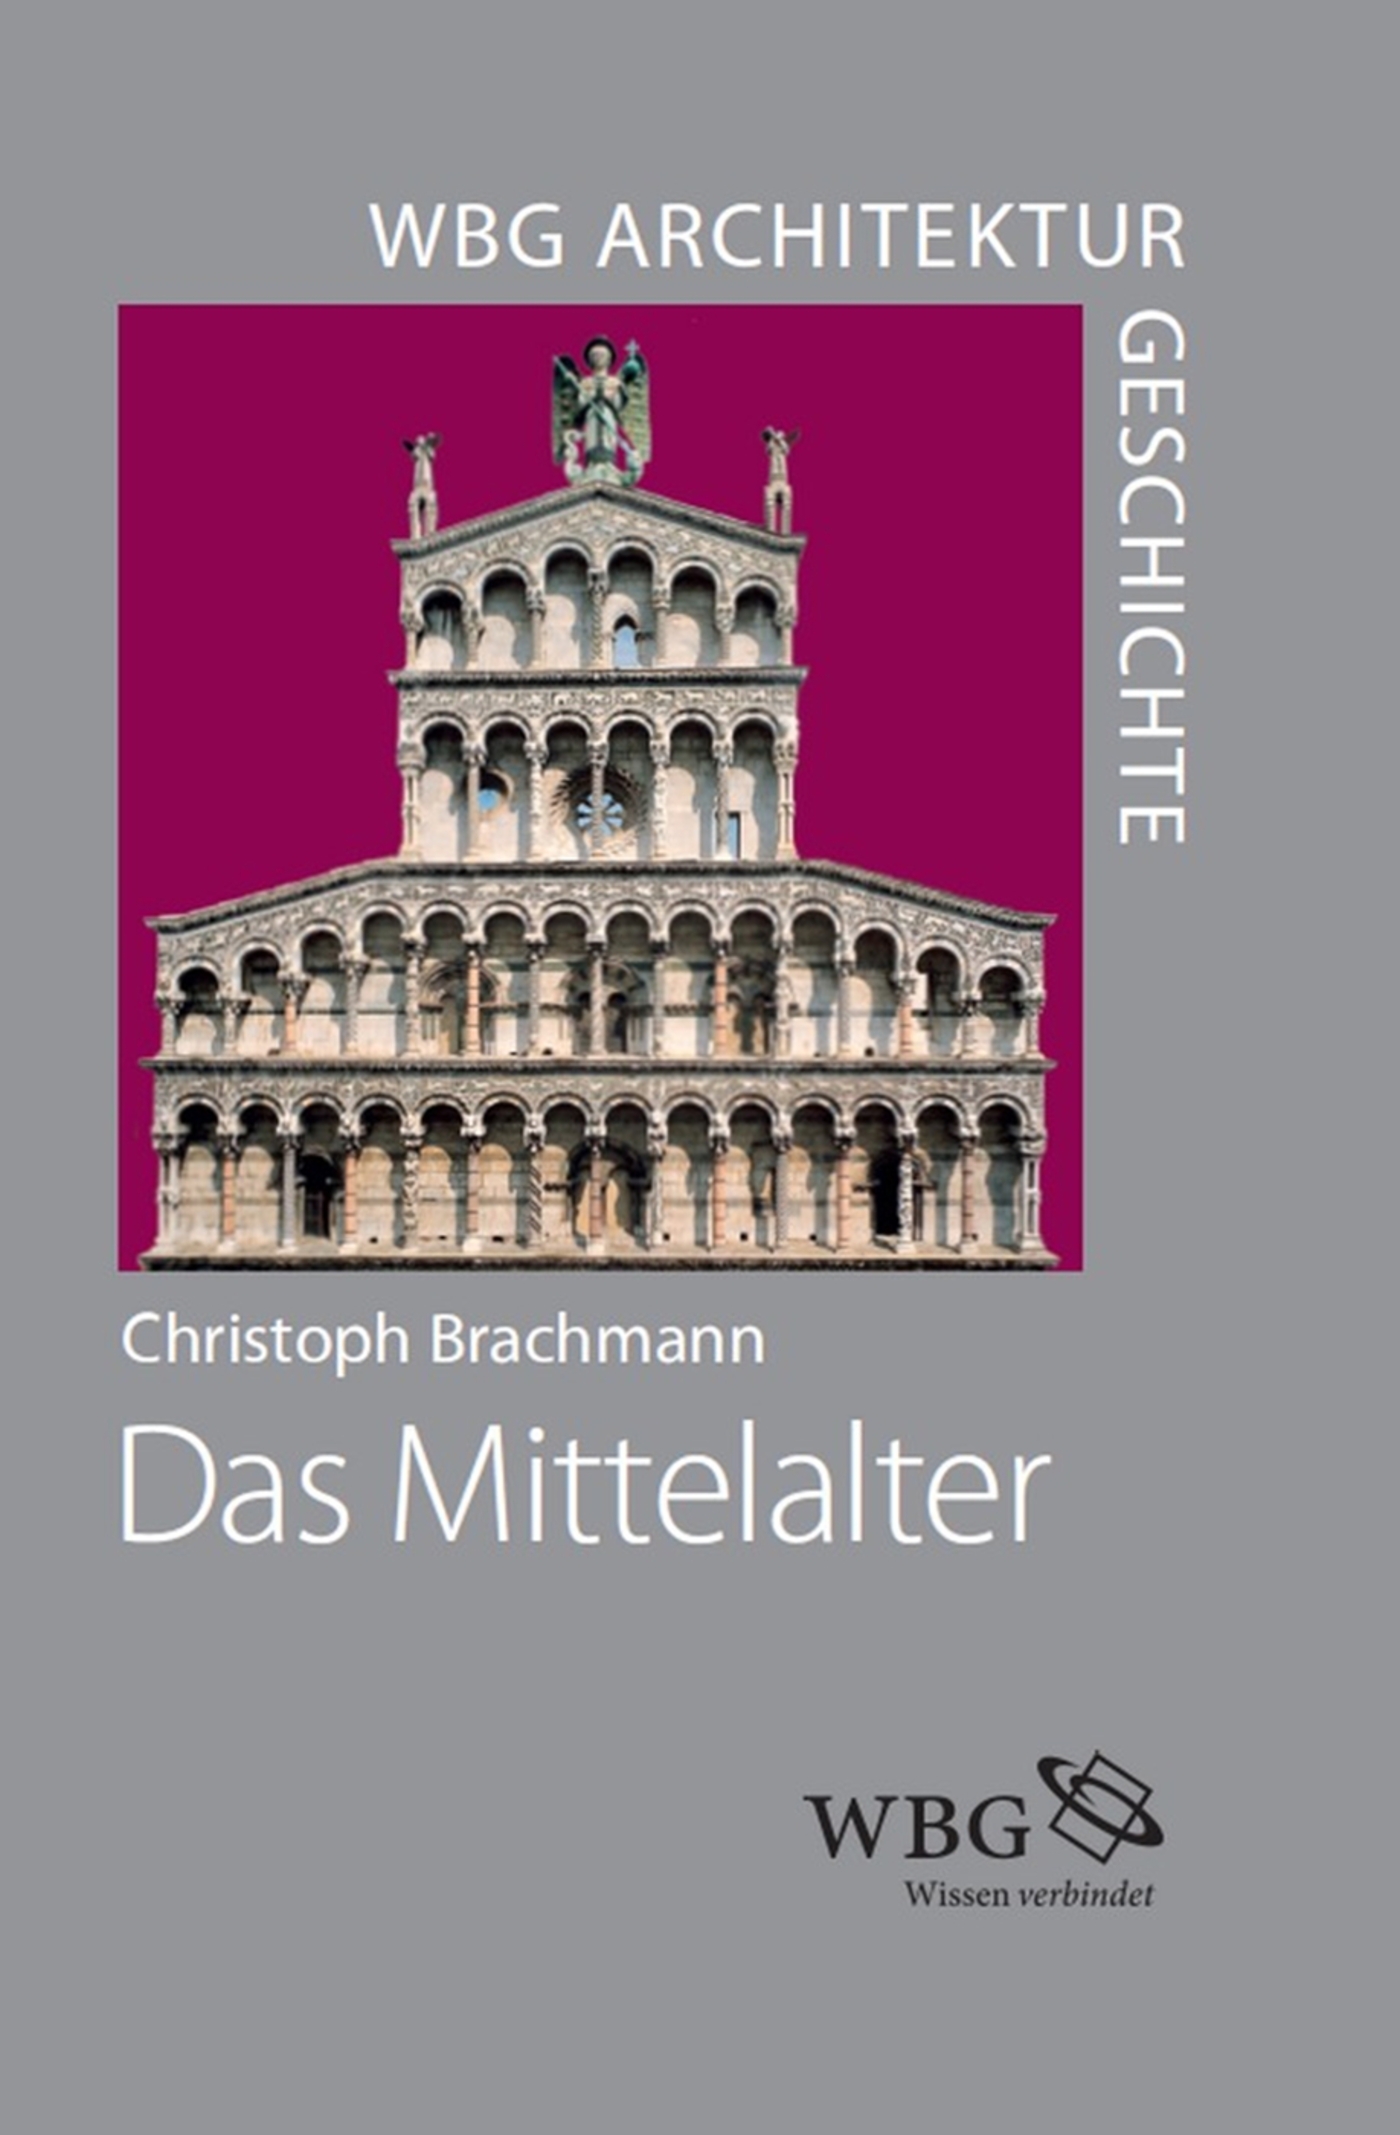 WBG Architekturgeschichte  Das Mittelalter (8001500)